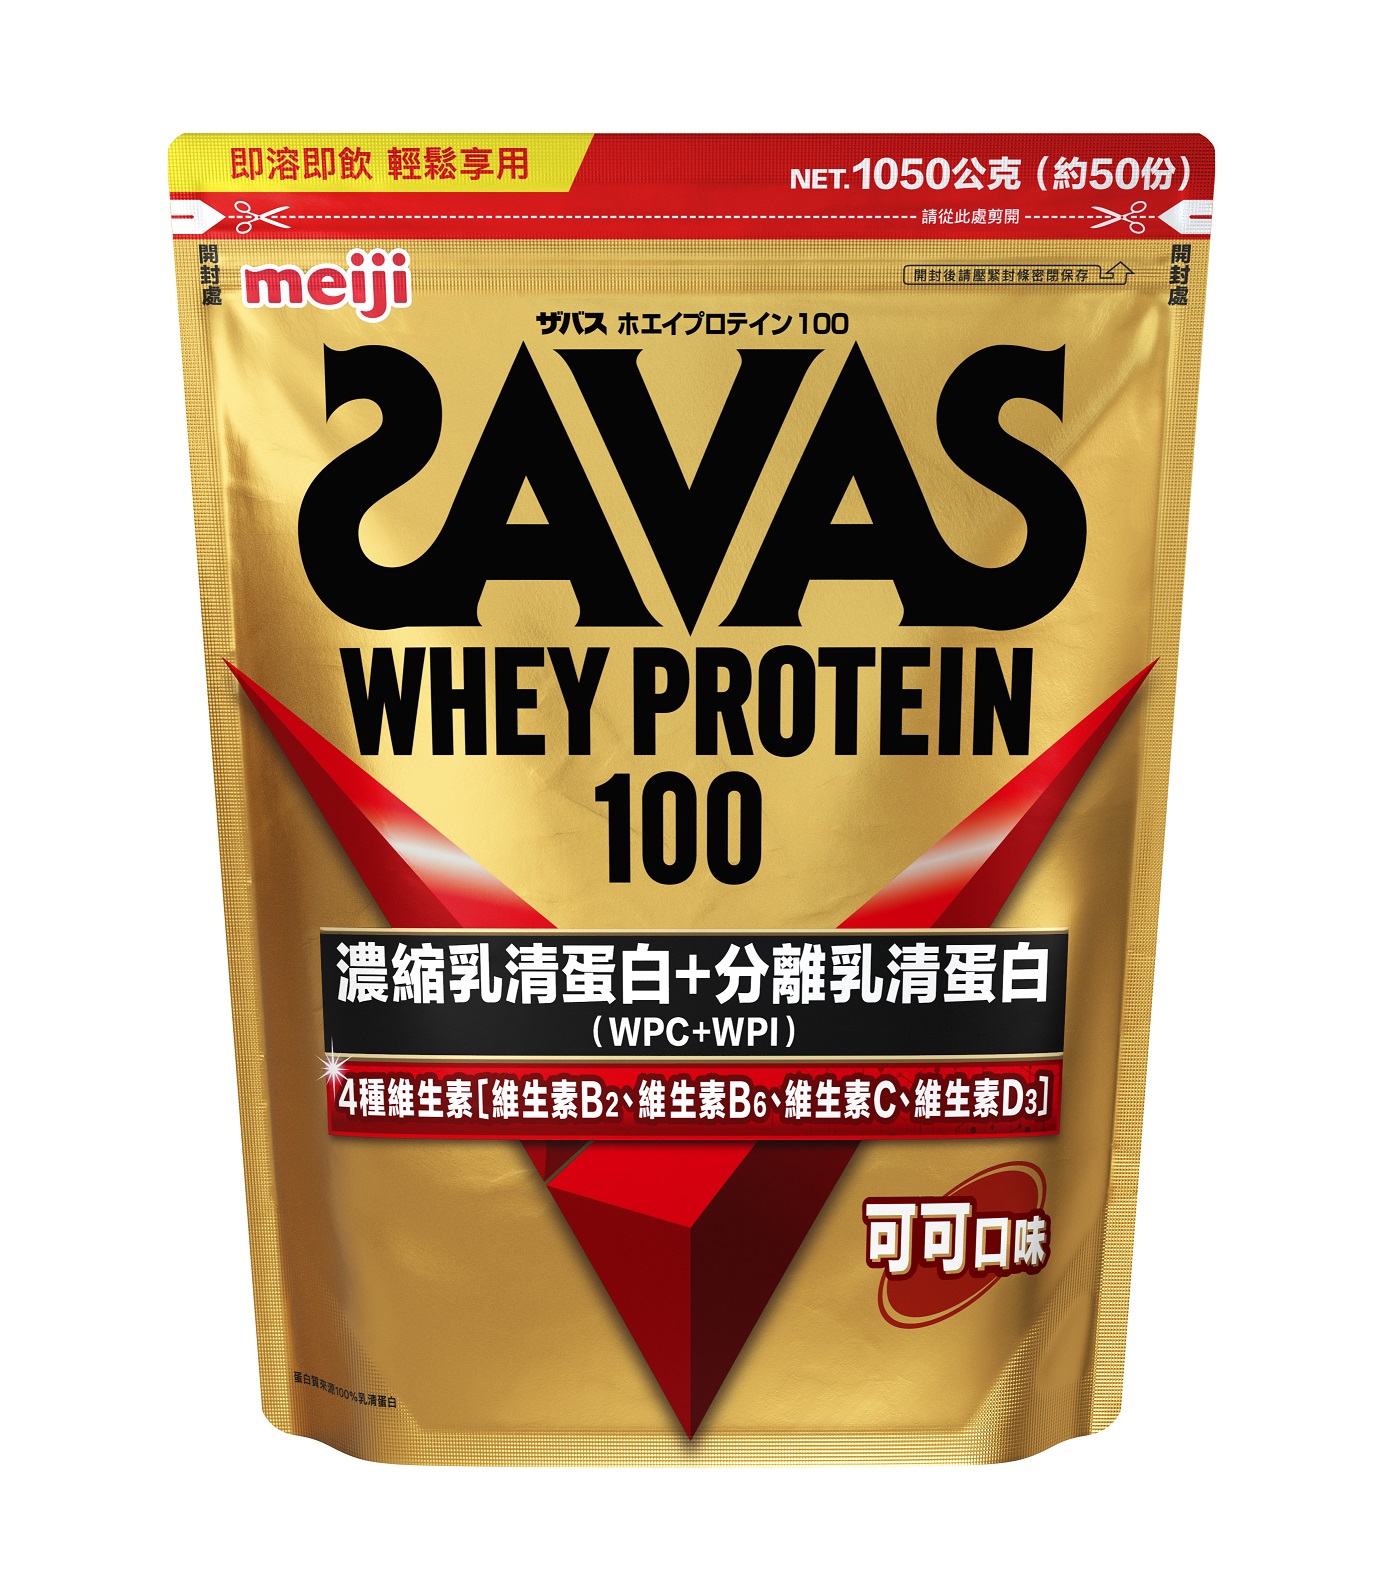 在台湾销售的SAVAS产品图片